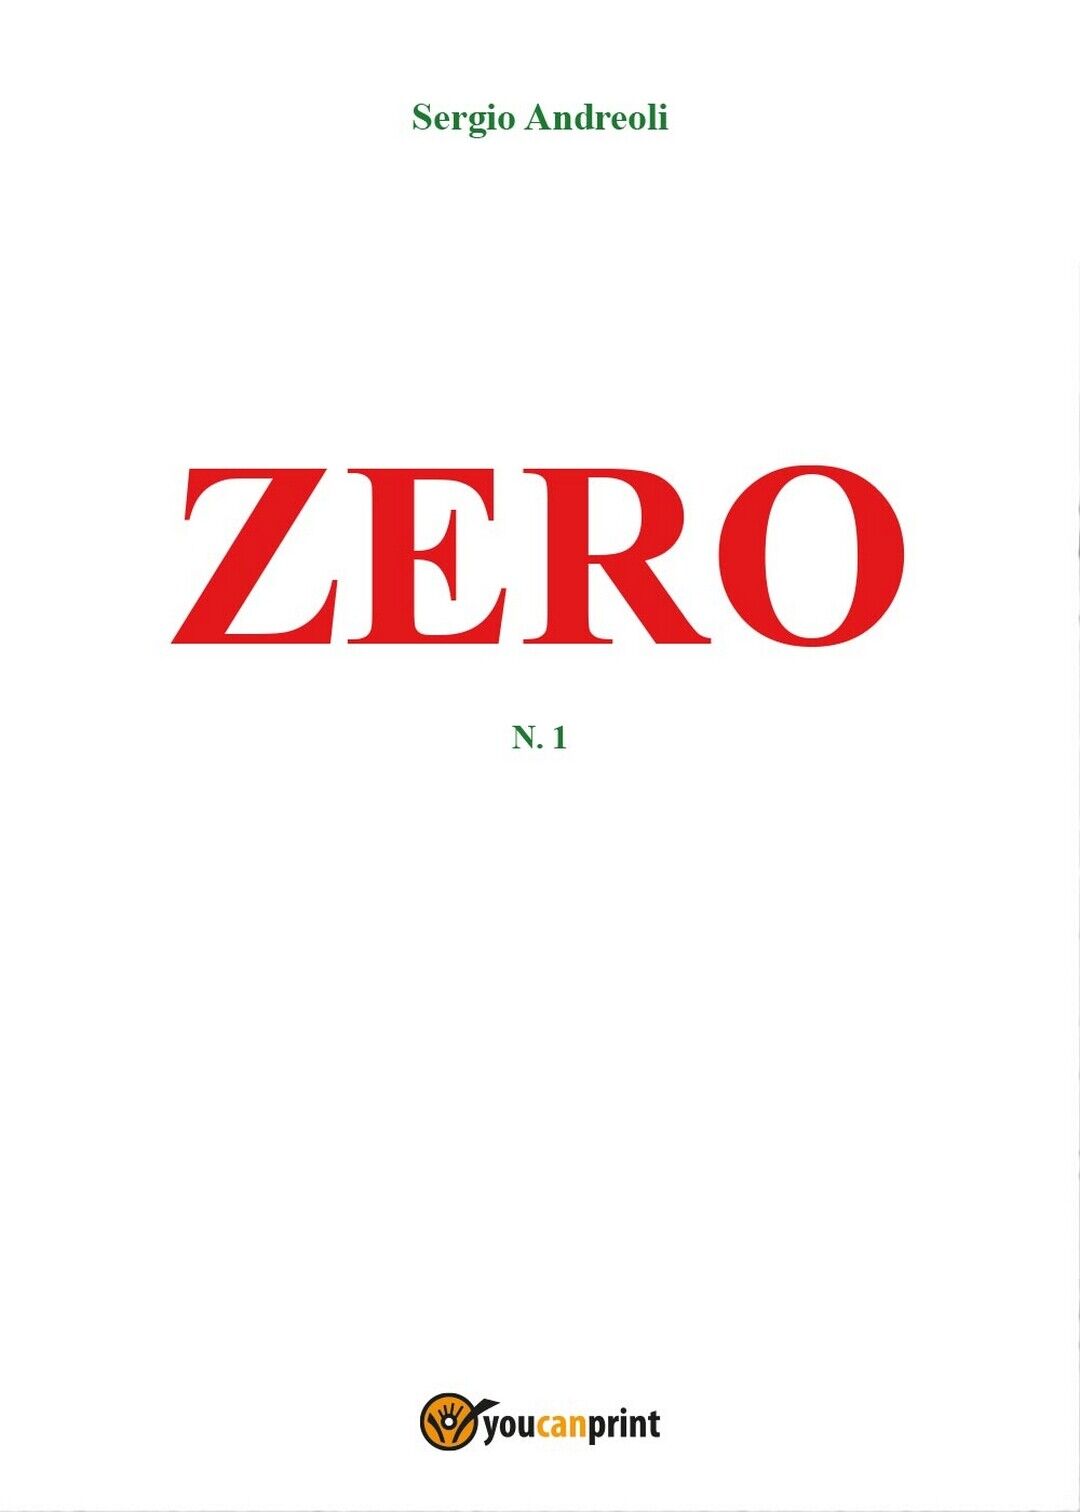 Zero  - Sergio Andreoli,  2017,  Youcanprint